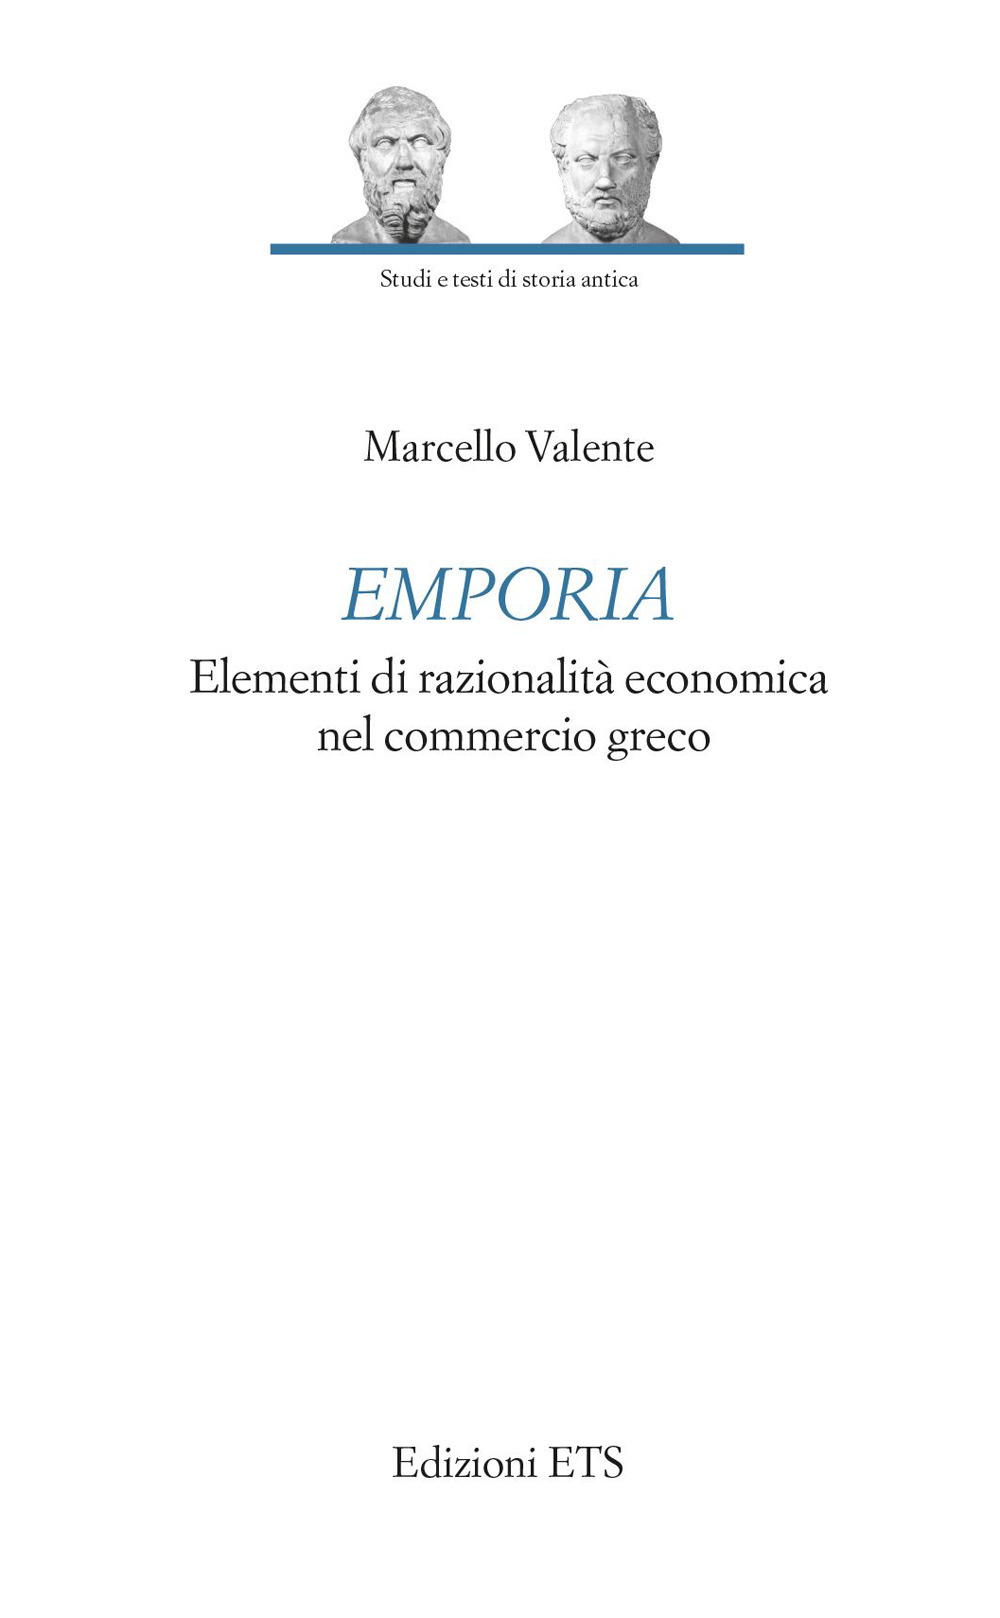 Emporia. Elementi di razionalità economica nel commercio greco